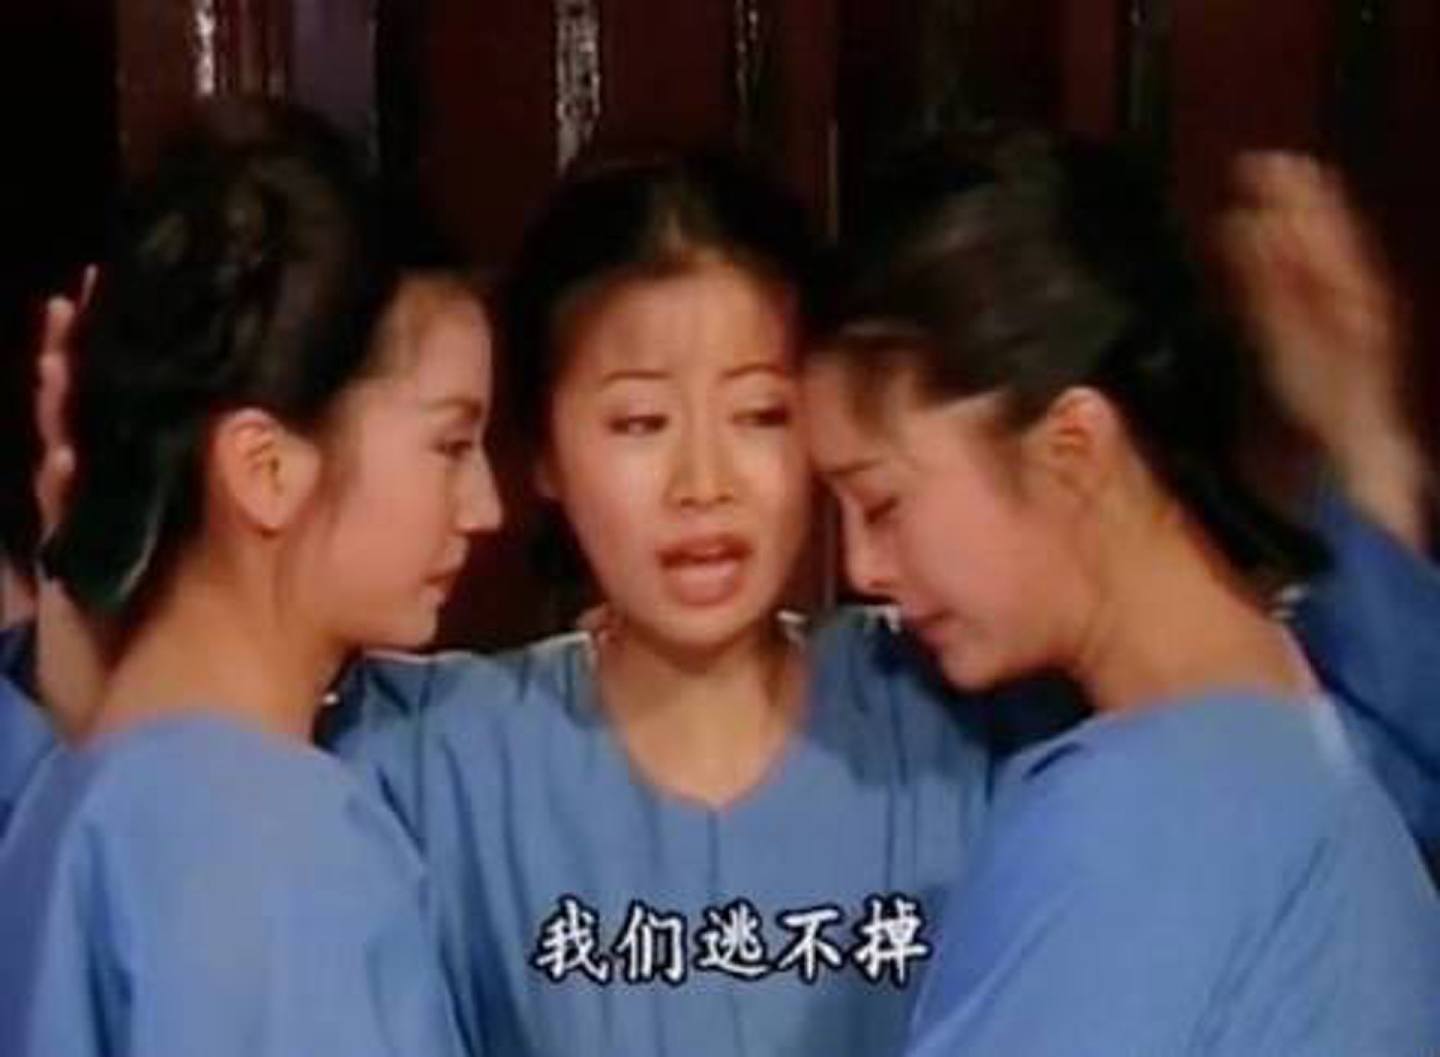 趙薇（左）、林心如（中）、范冰冰（右）先後在內地引起爭議。圖為三人出道作品《還珠格格》劇照。